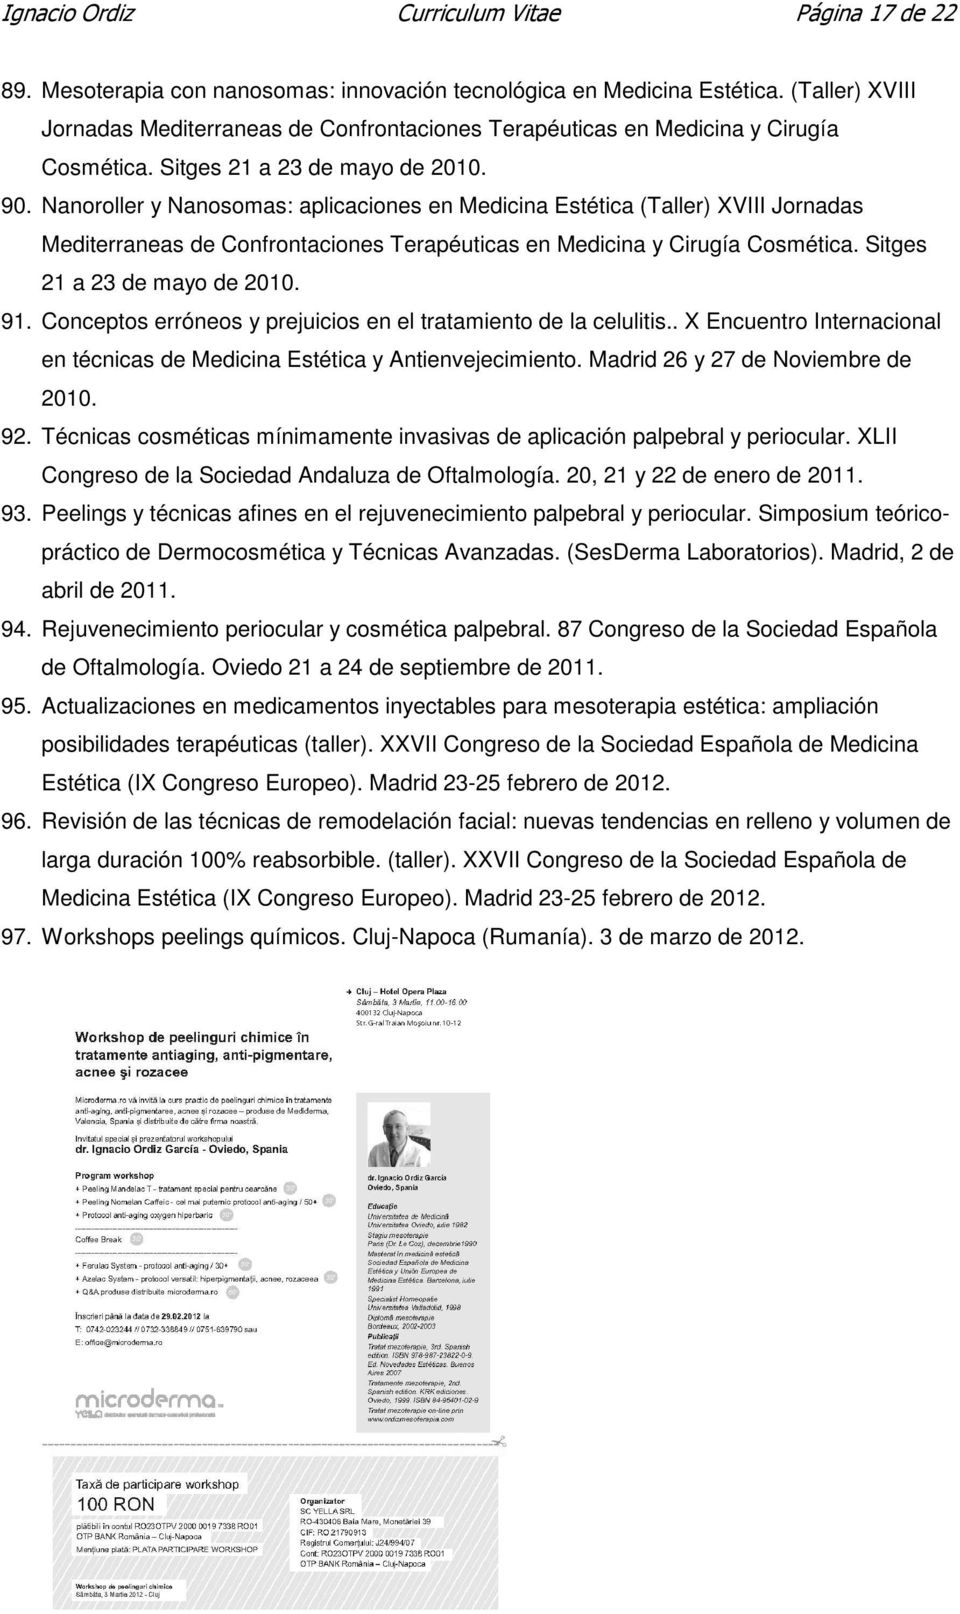 Nanoroller y Nanosomas: aplicaciones en Medicina Estética (Taller) XVIII Jornadas Mediterraneas de Confrontaciones Terapéuticas en Medicina y Cirugía Cosmética. Sitges 21 a 23 de mayo de 2010. 91.